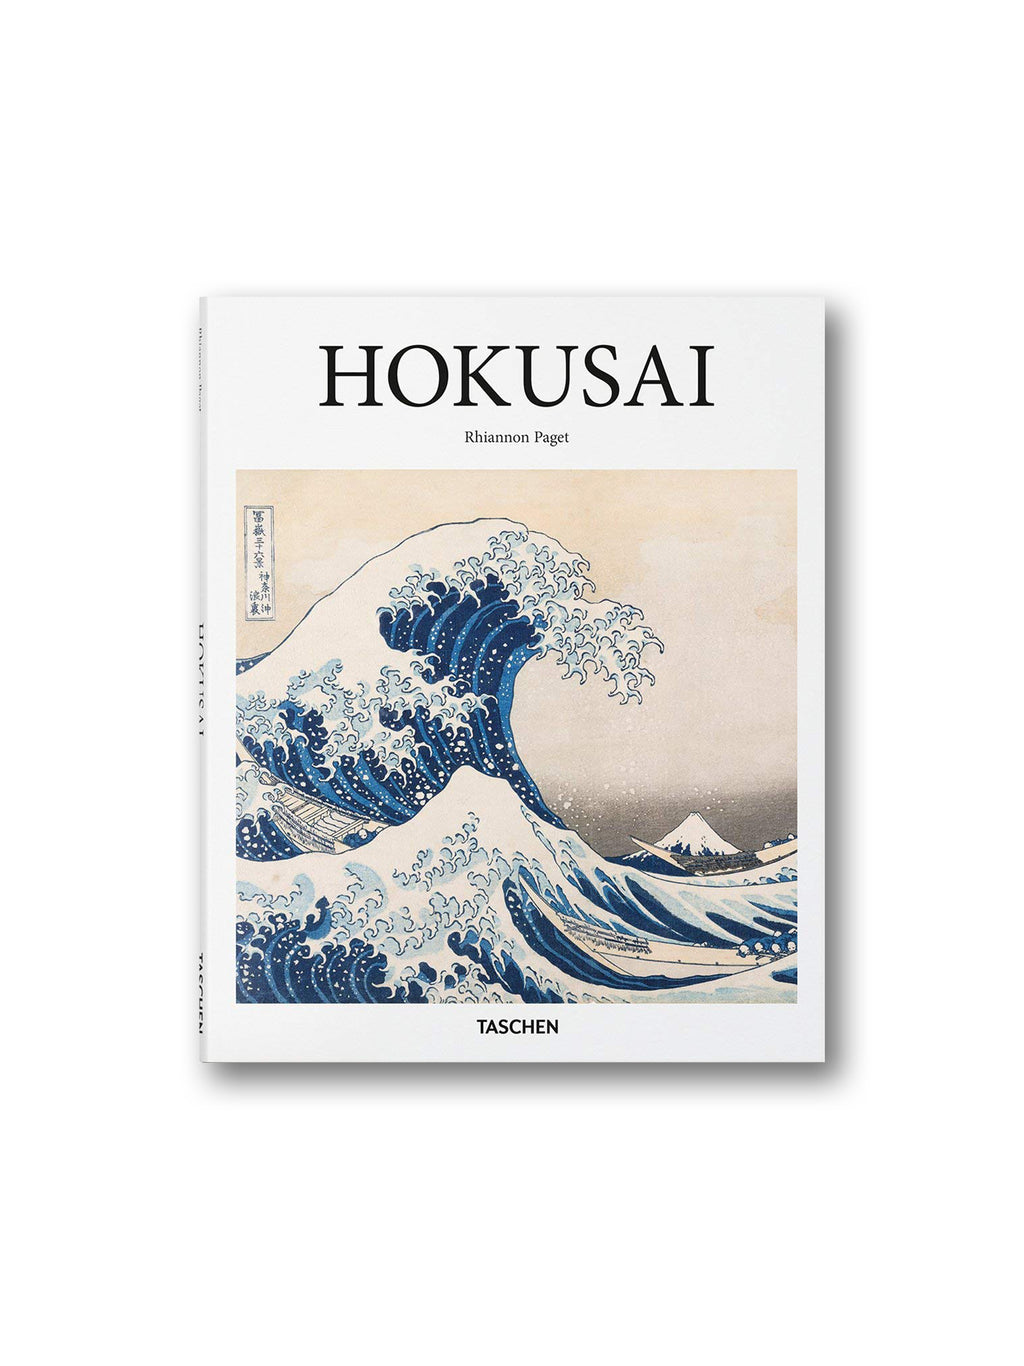 Hokusai - Taschen Basic Art Series